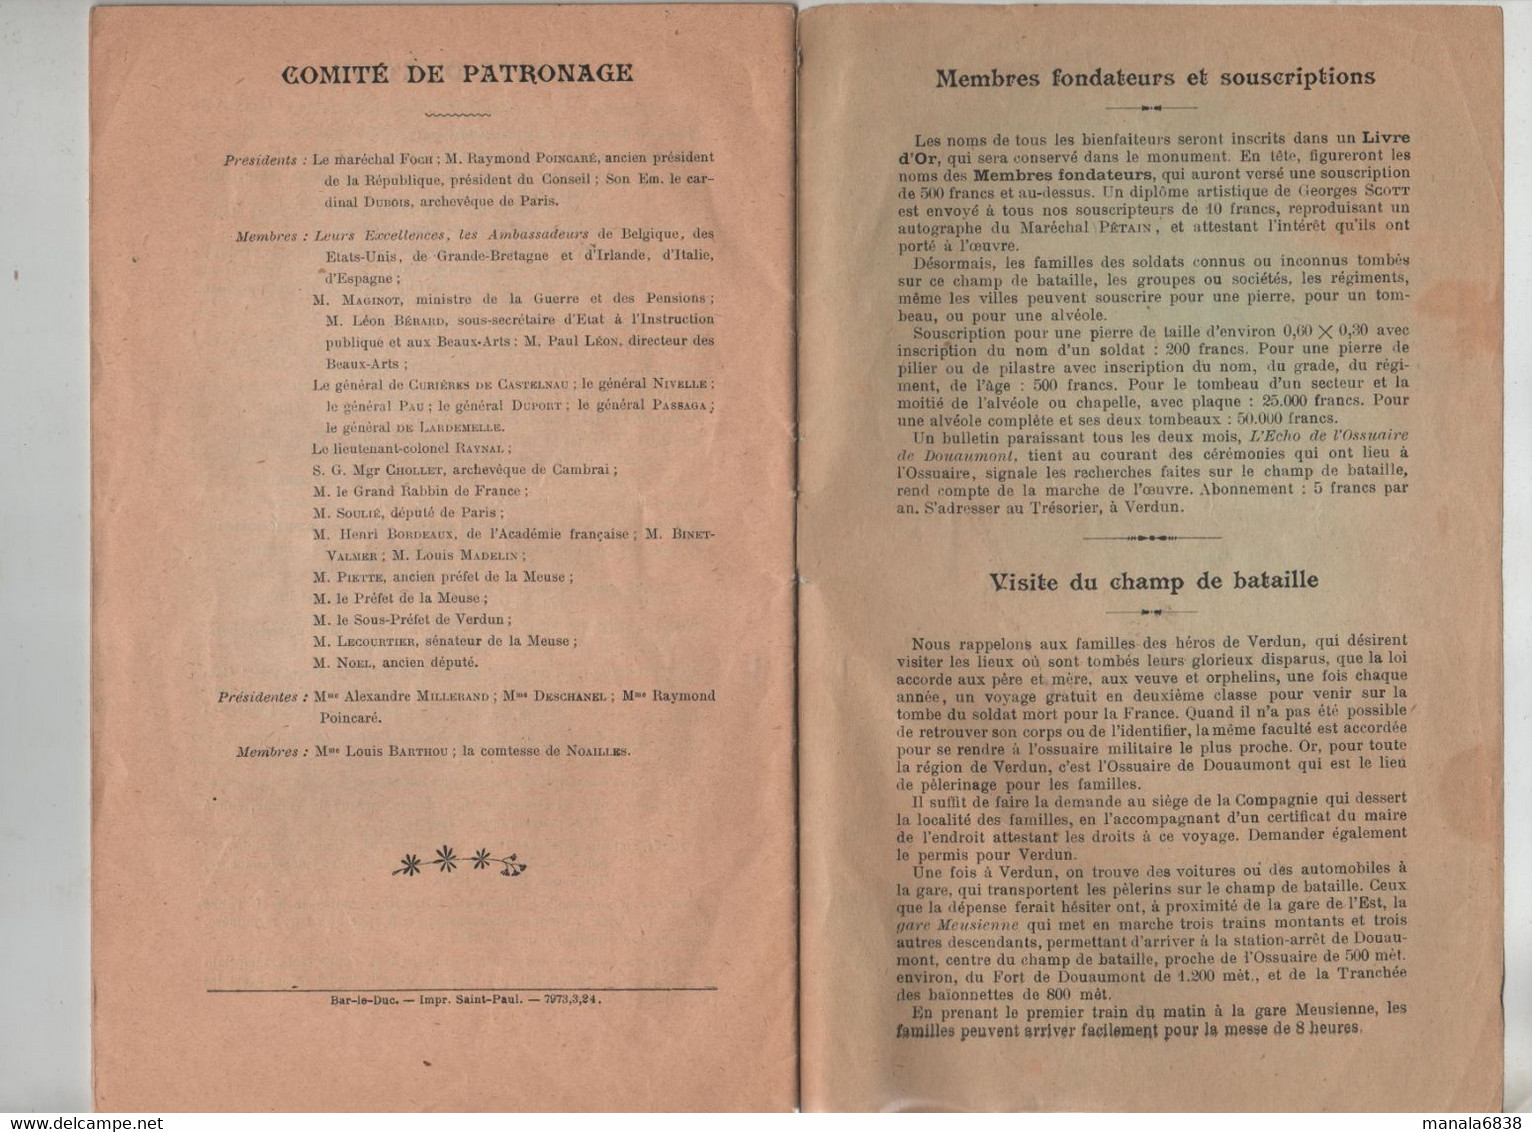 La Bataille De Verdun Général Passaga 1924 - Altri & Non Classificati